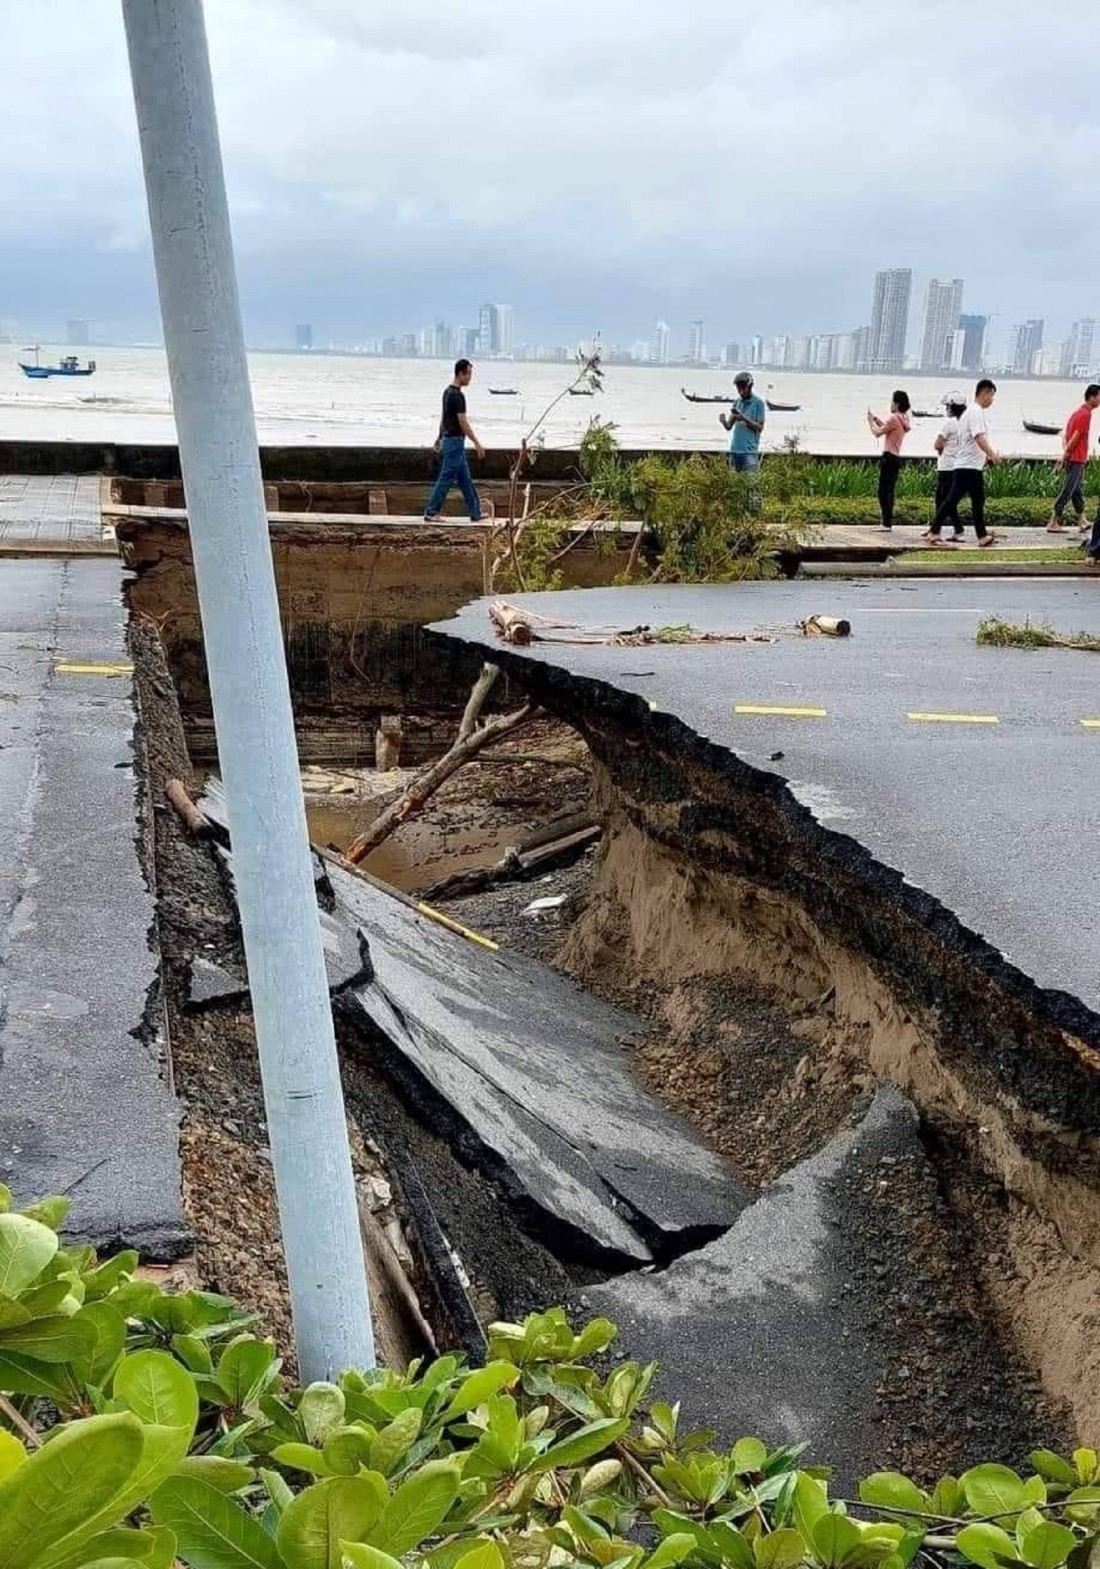 Đà Nẵng tan hoang sau trận lũ lụt lịch sử